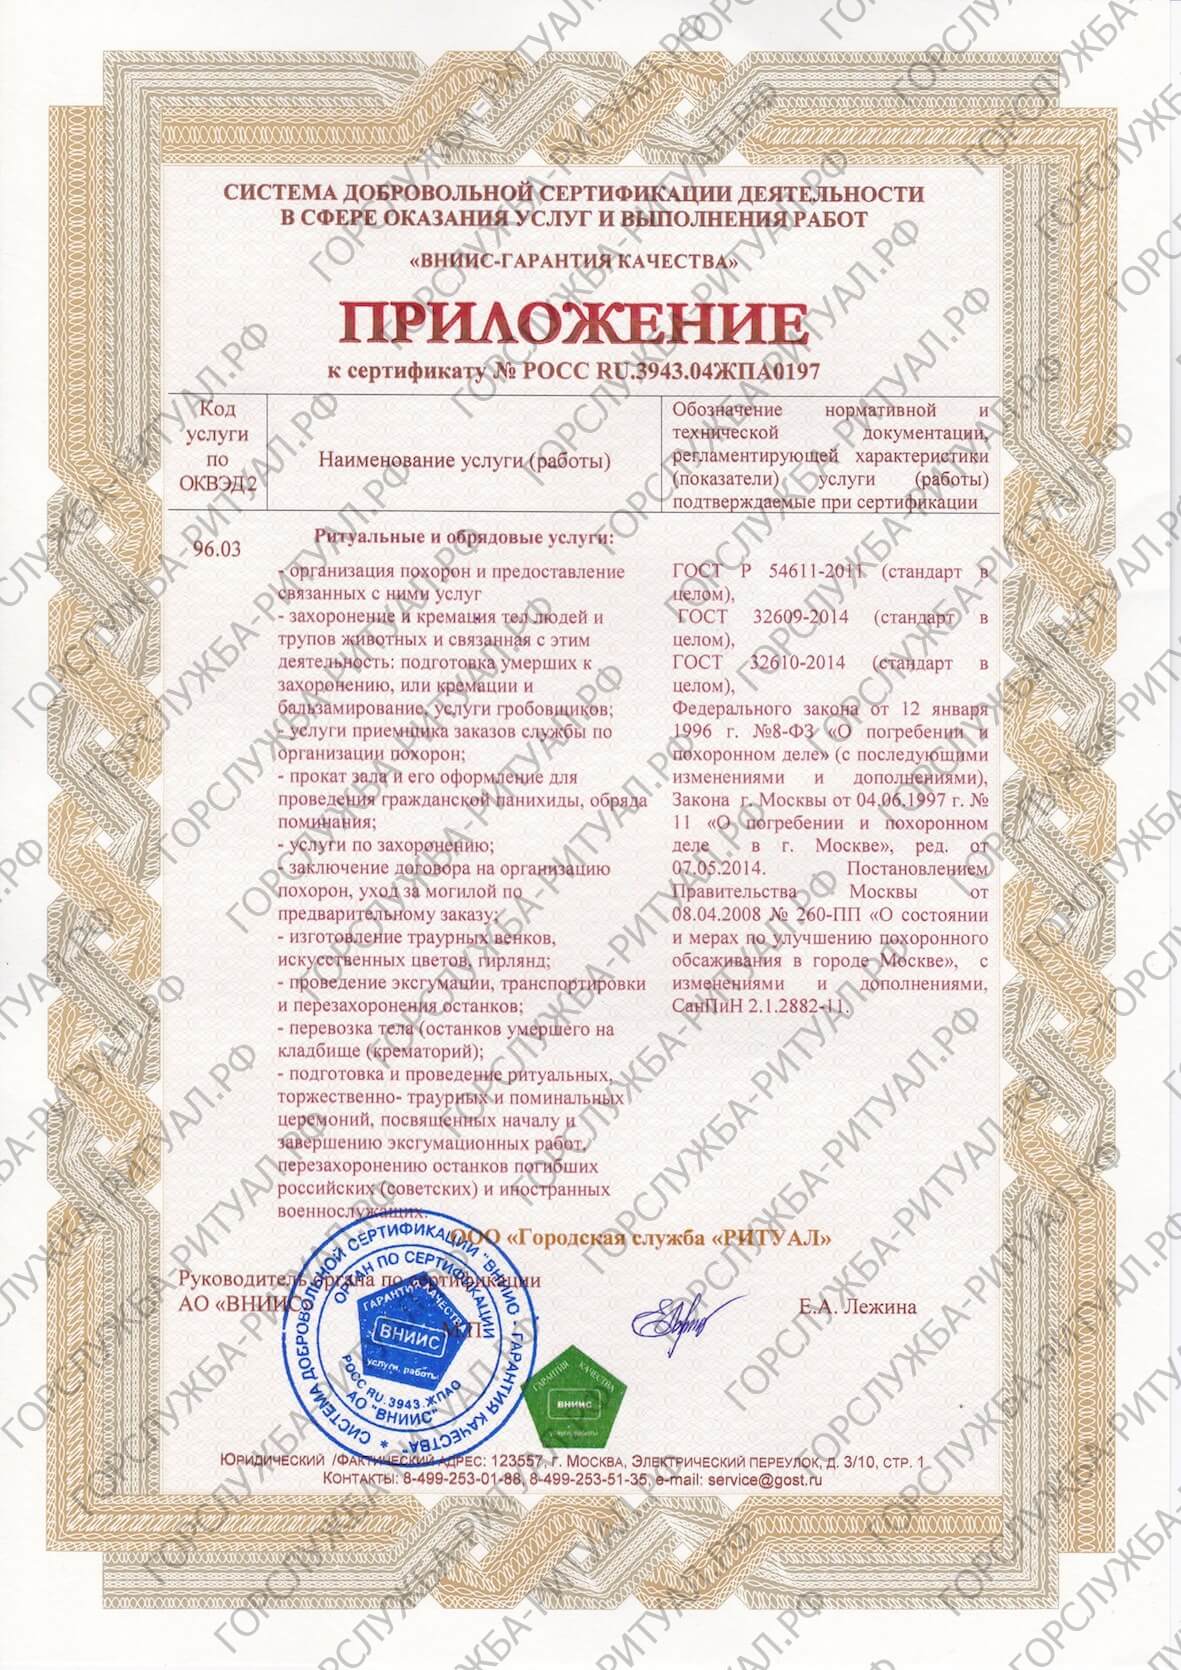 Приложение к сертификату №POCC RU.3942.04:GF0197